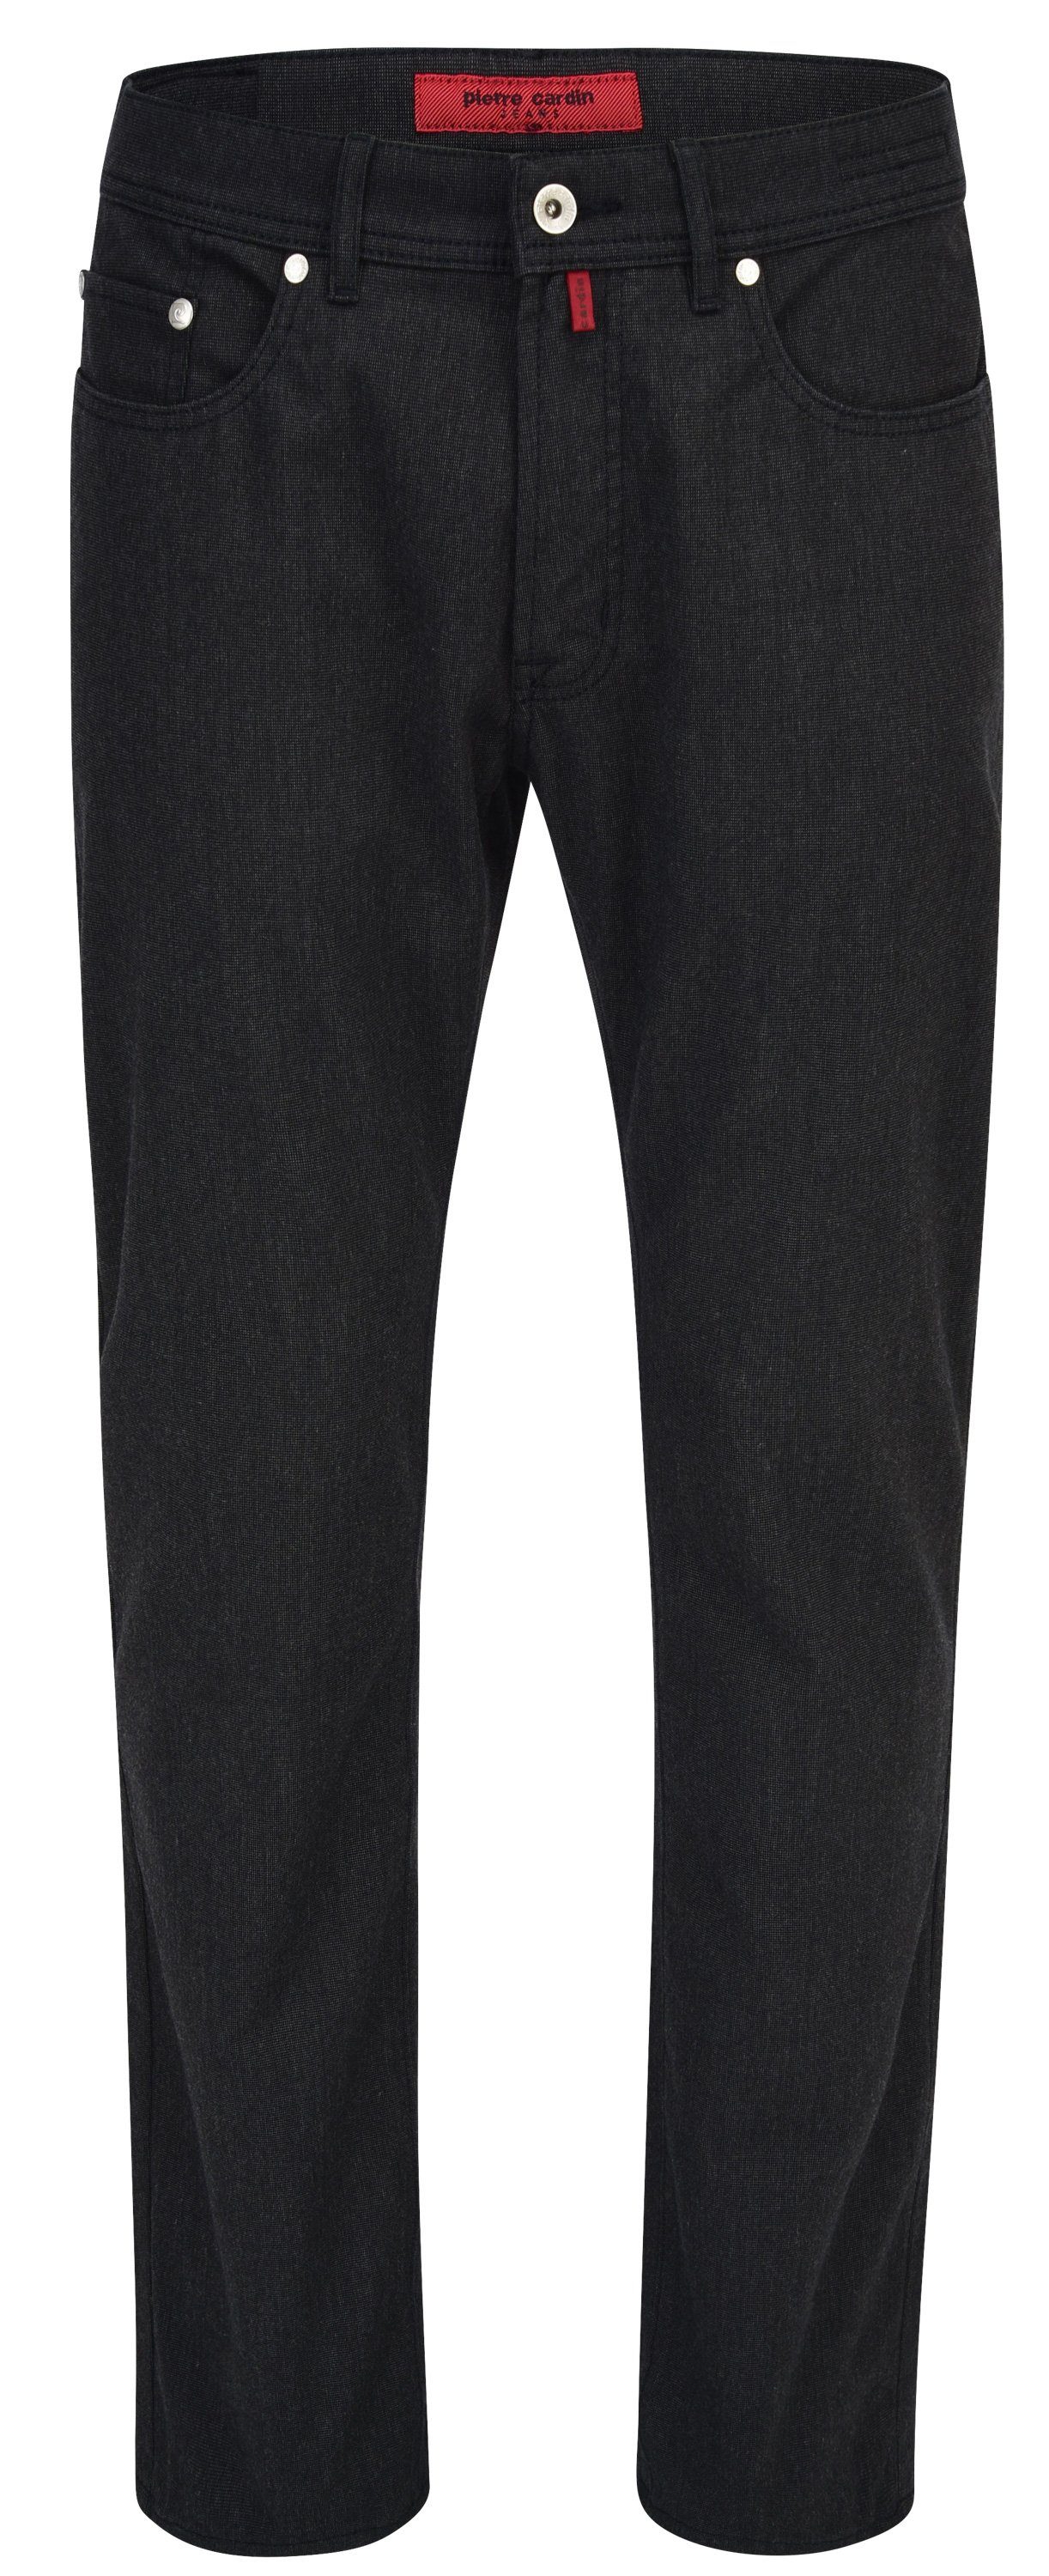 LYON 5-Pocket-Jeans Cardin PIERRE - schwarz 4715.88 Pierre 3091 VOYAGE CARDIN